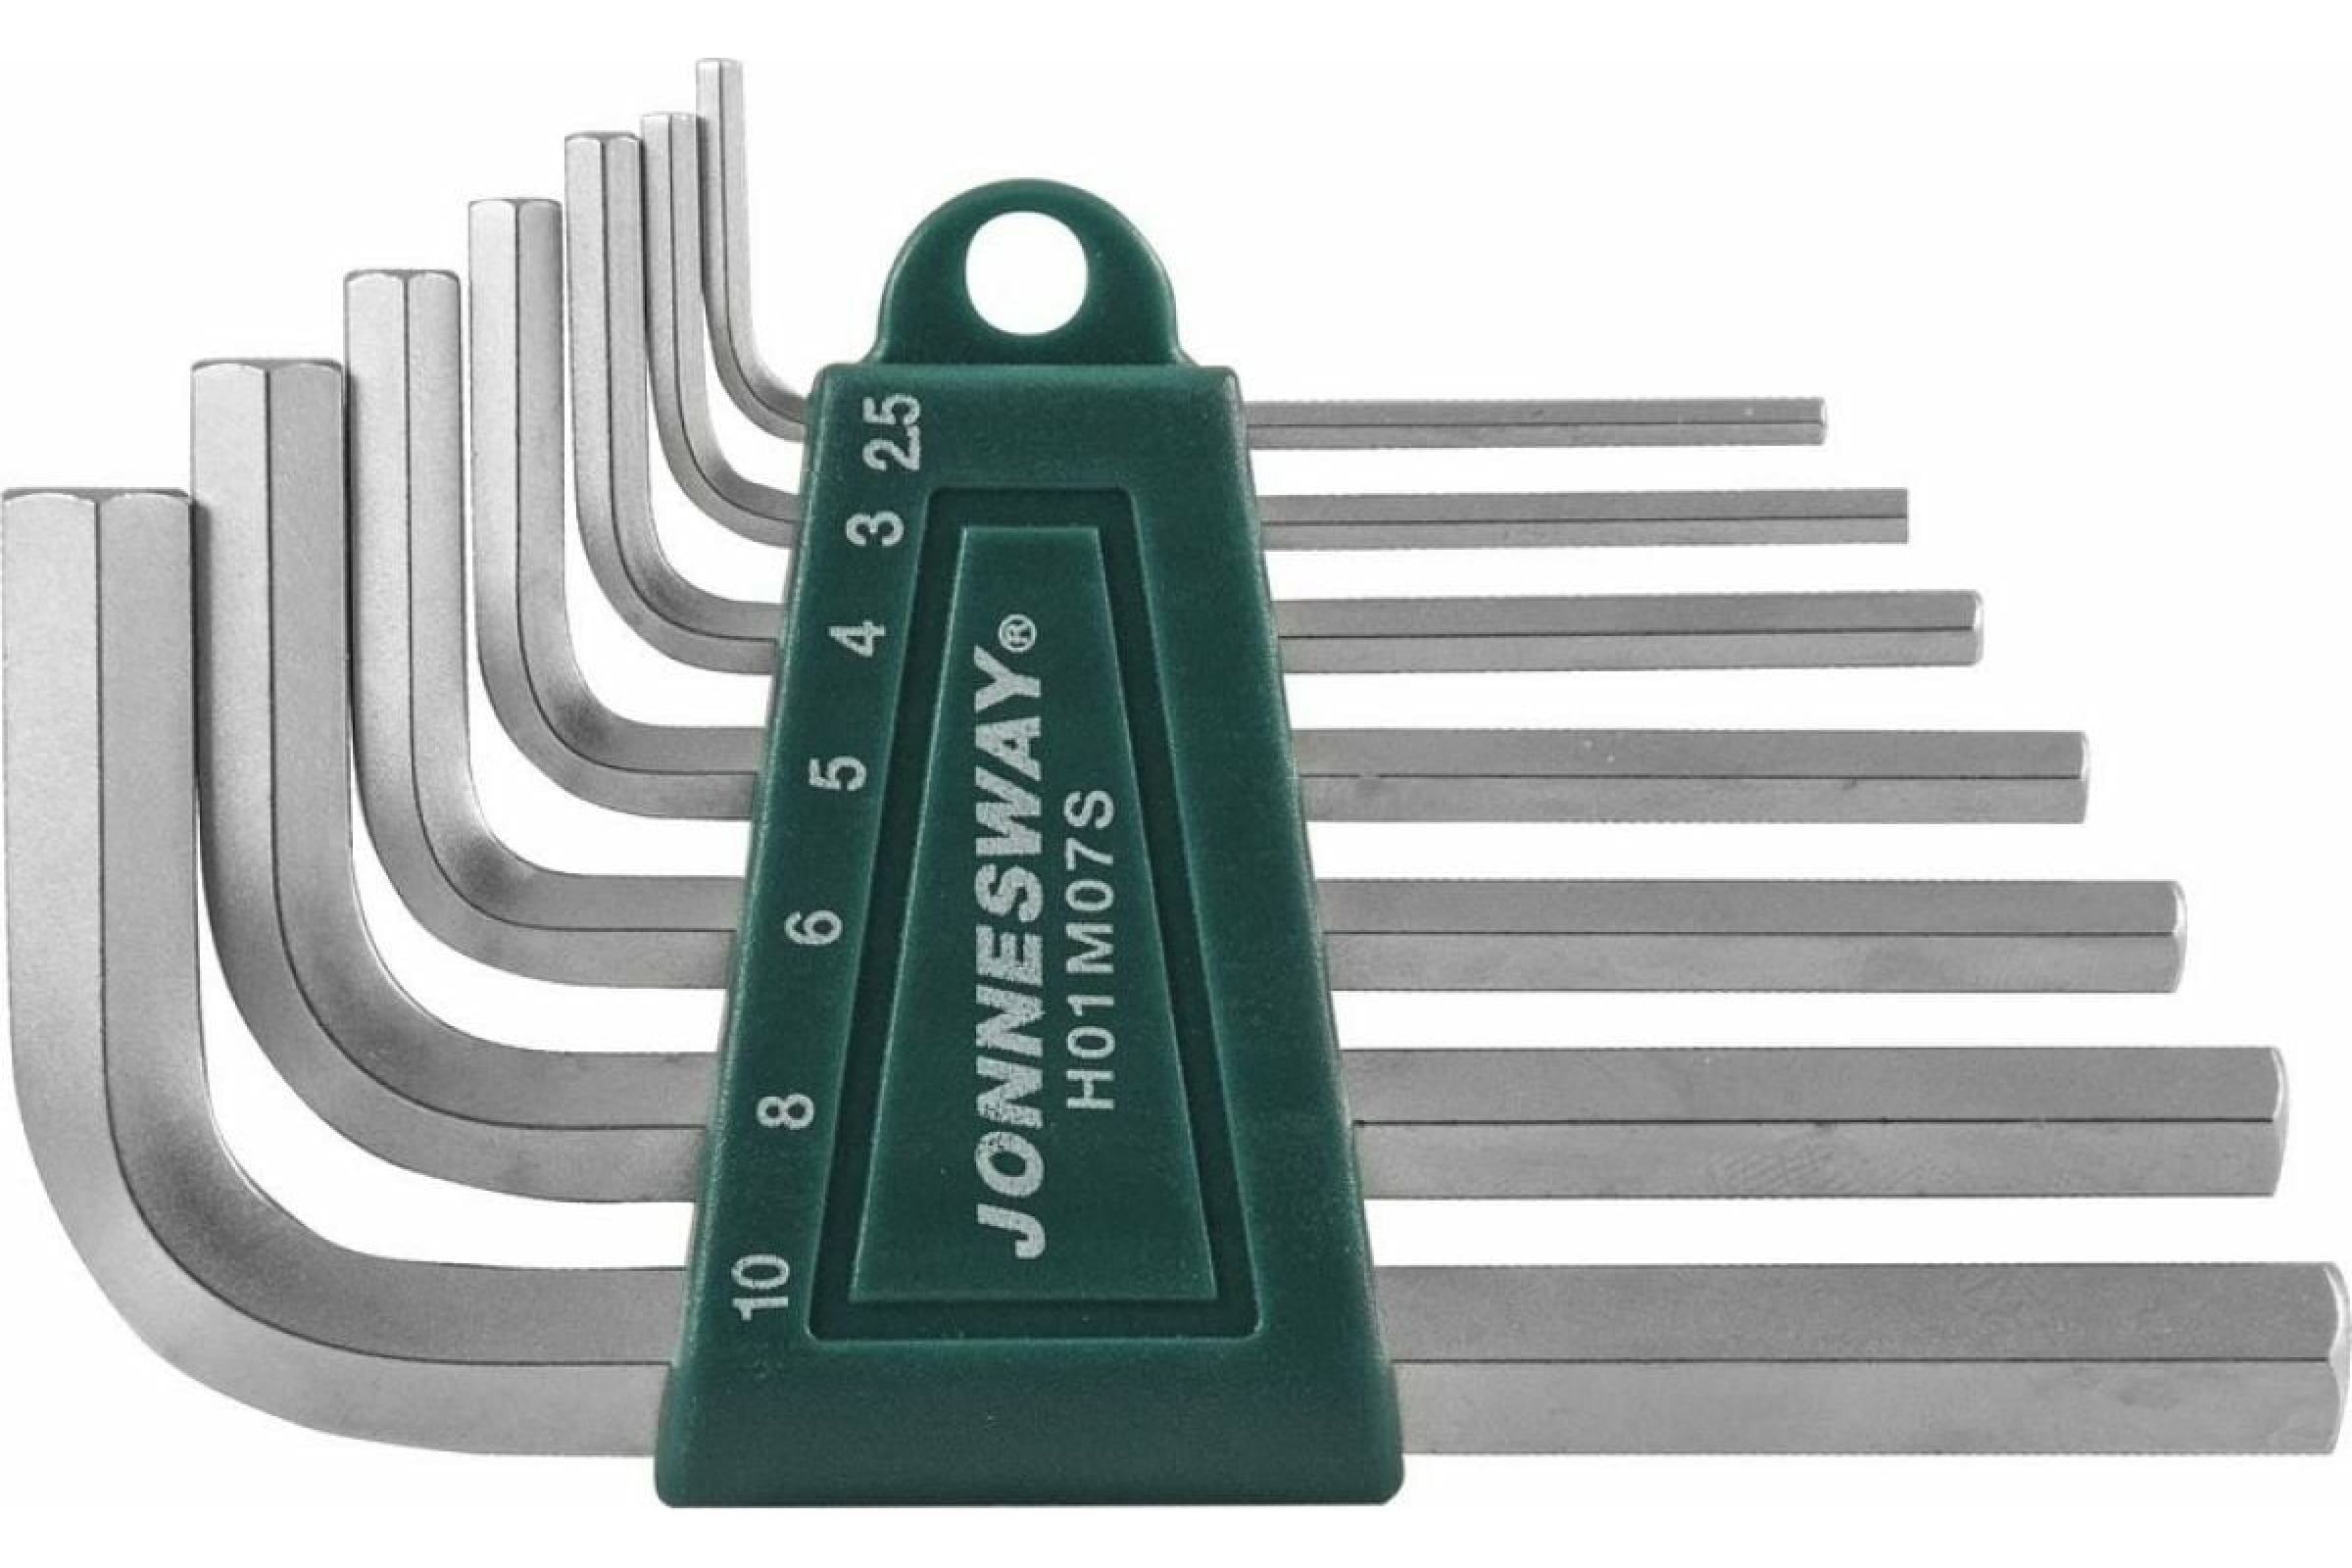 Комплект ключей-шестиграников (2,5-10 мм) Jonnesway H01M07S, 7 штук - фото